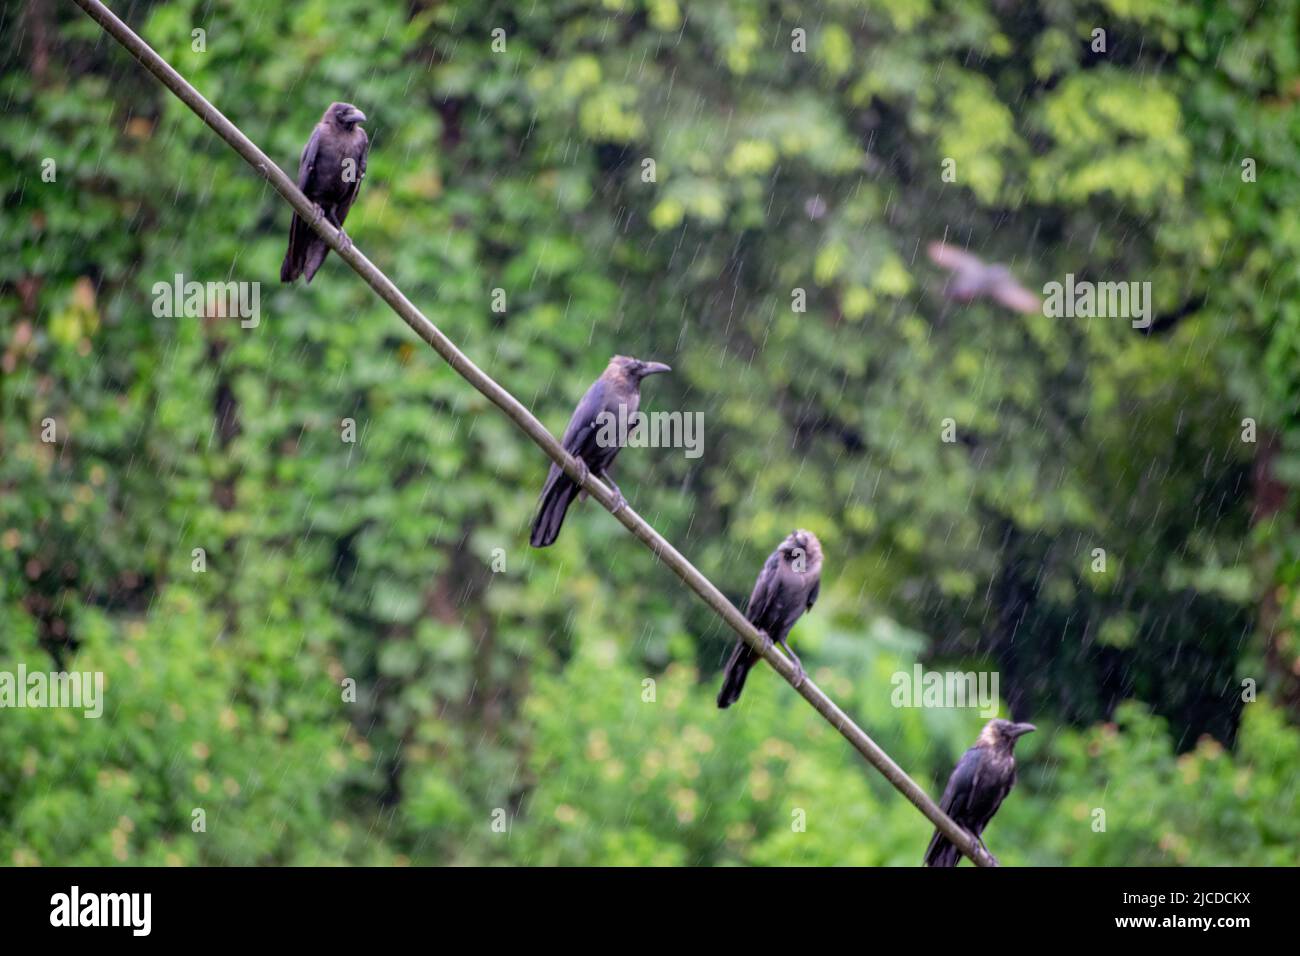 Krähe im Regen sitzt auf einem Metalldraht im Regen. Stockfoto